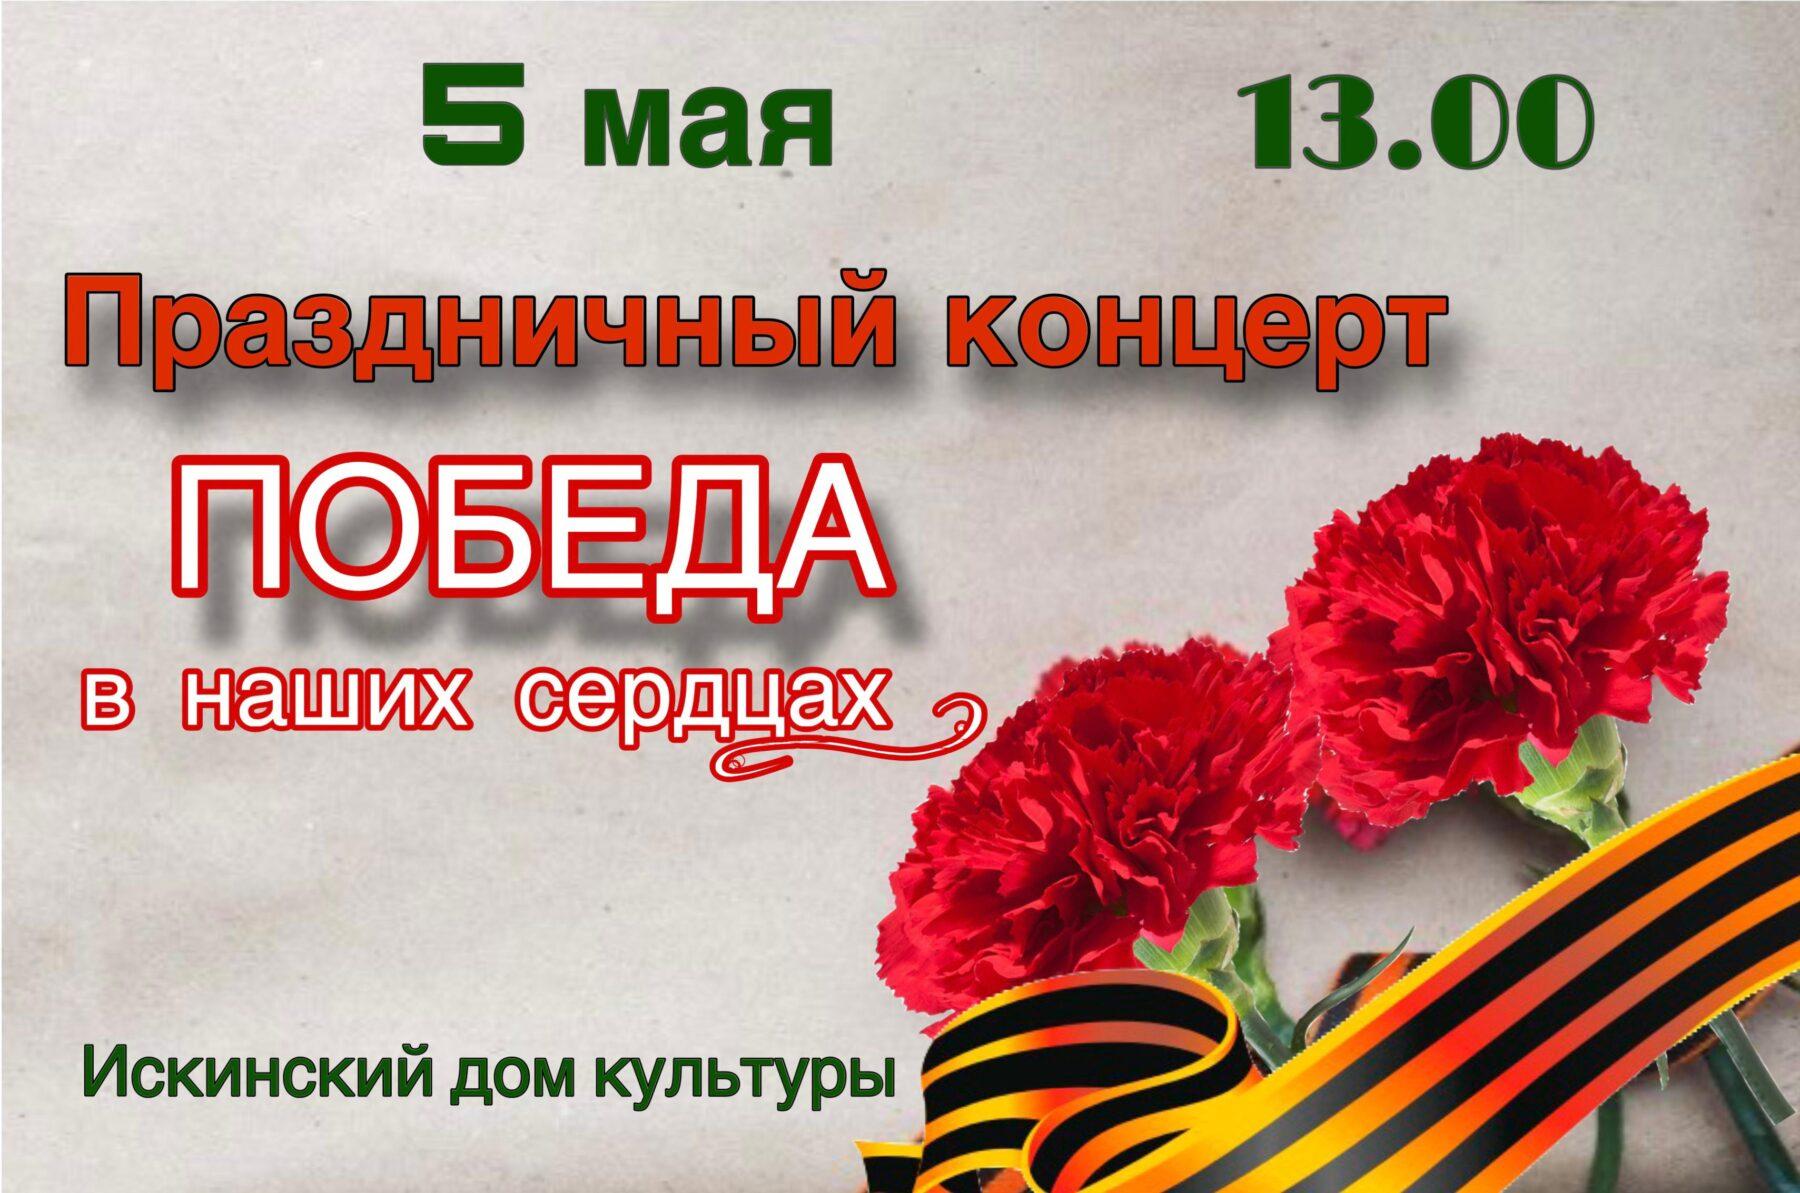 В Искинском доме культуры, состоится праздничный концерт, посвященный 79-й годовщине Победы в Великой Отечественной Войне